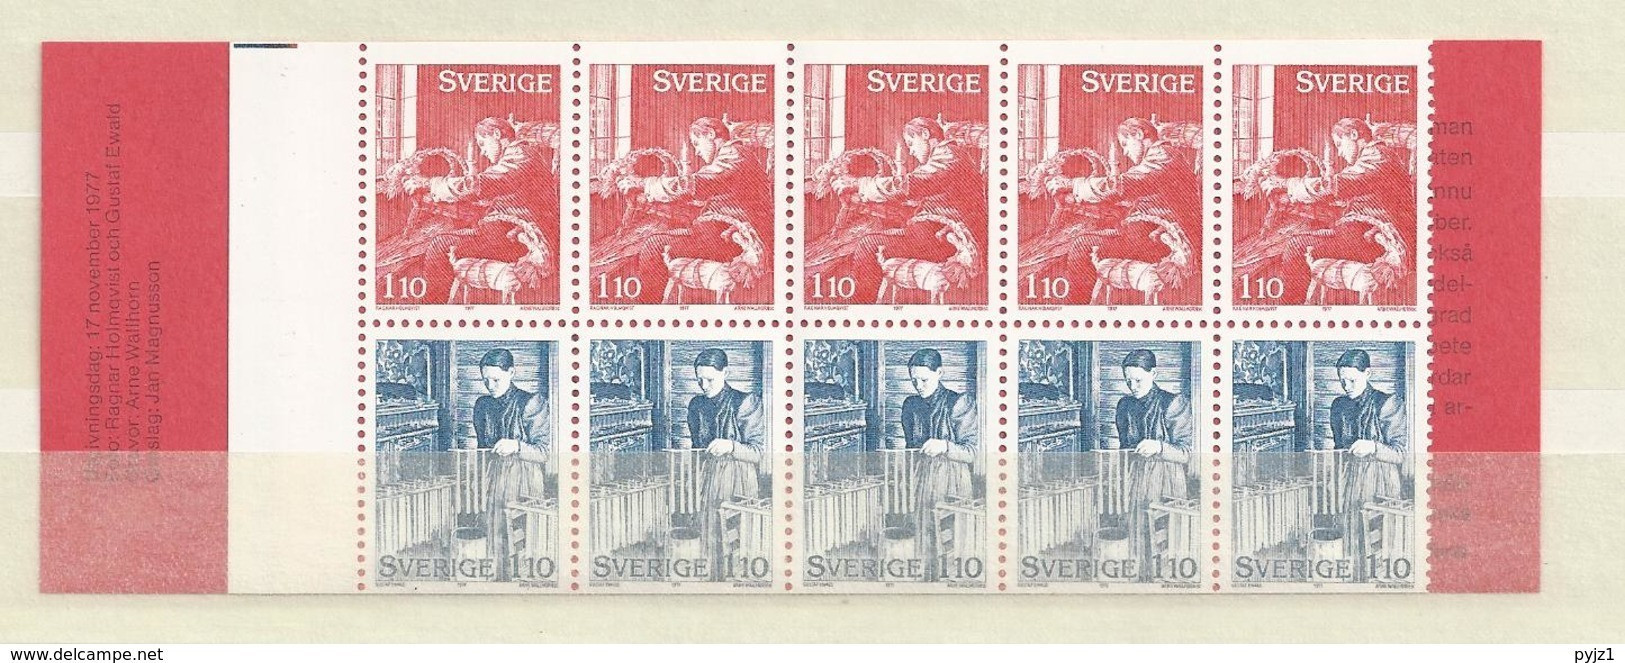 1977 MNH Booklet Sweden - 1951-80